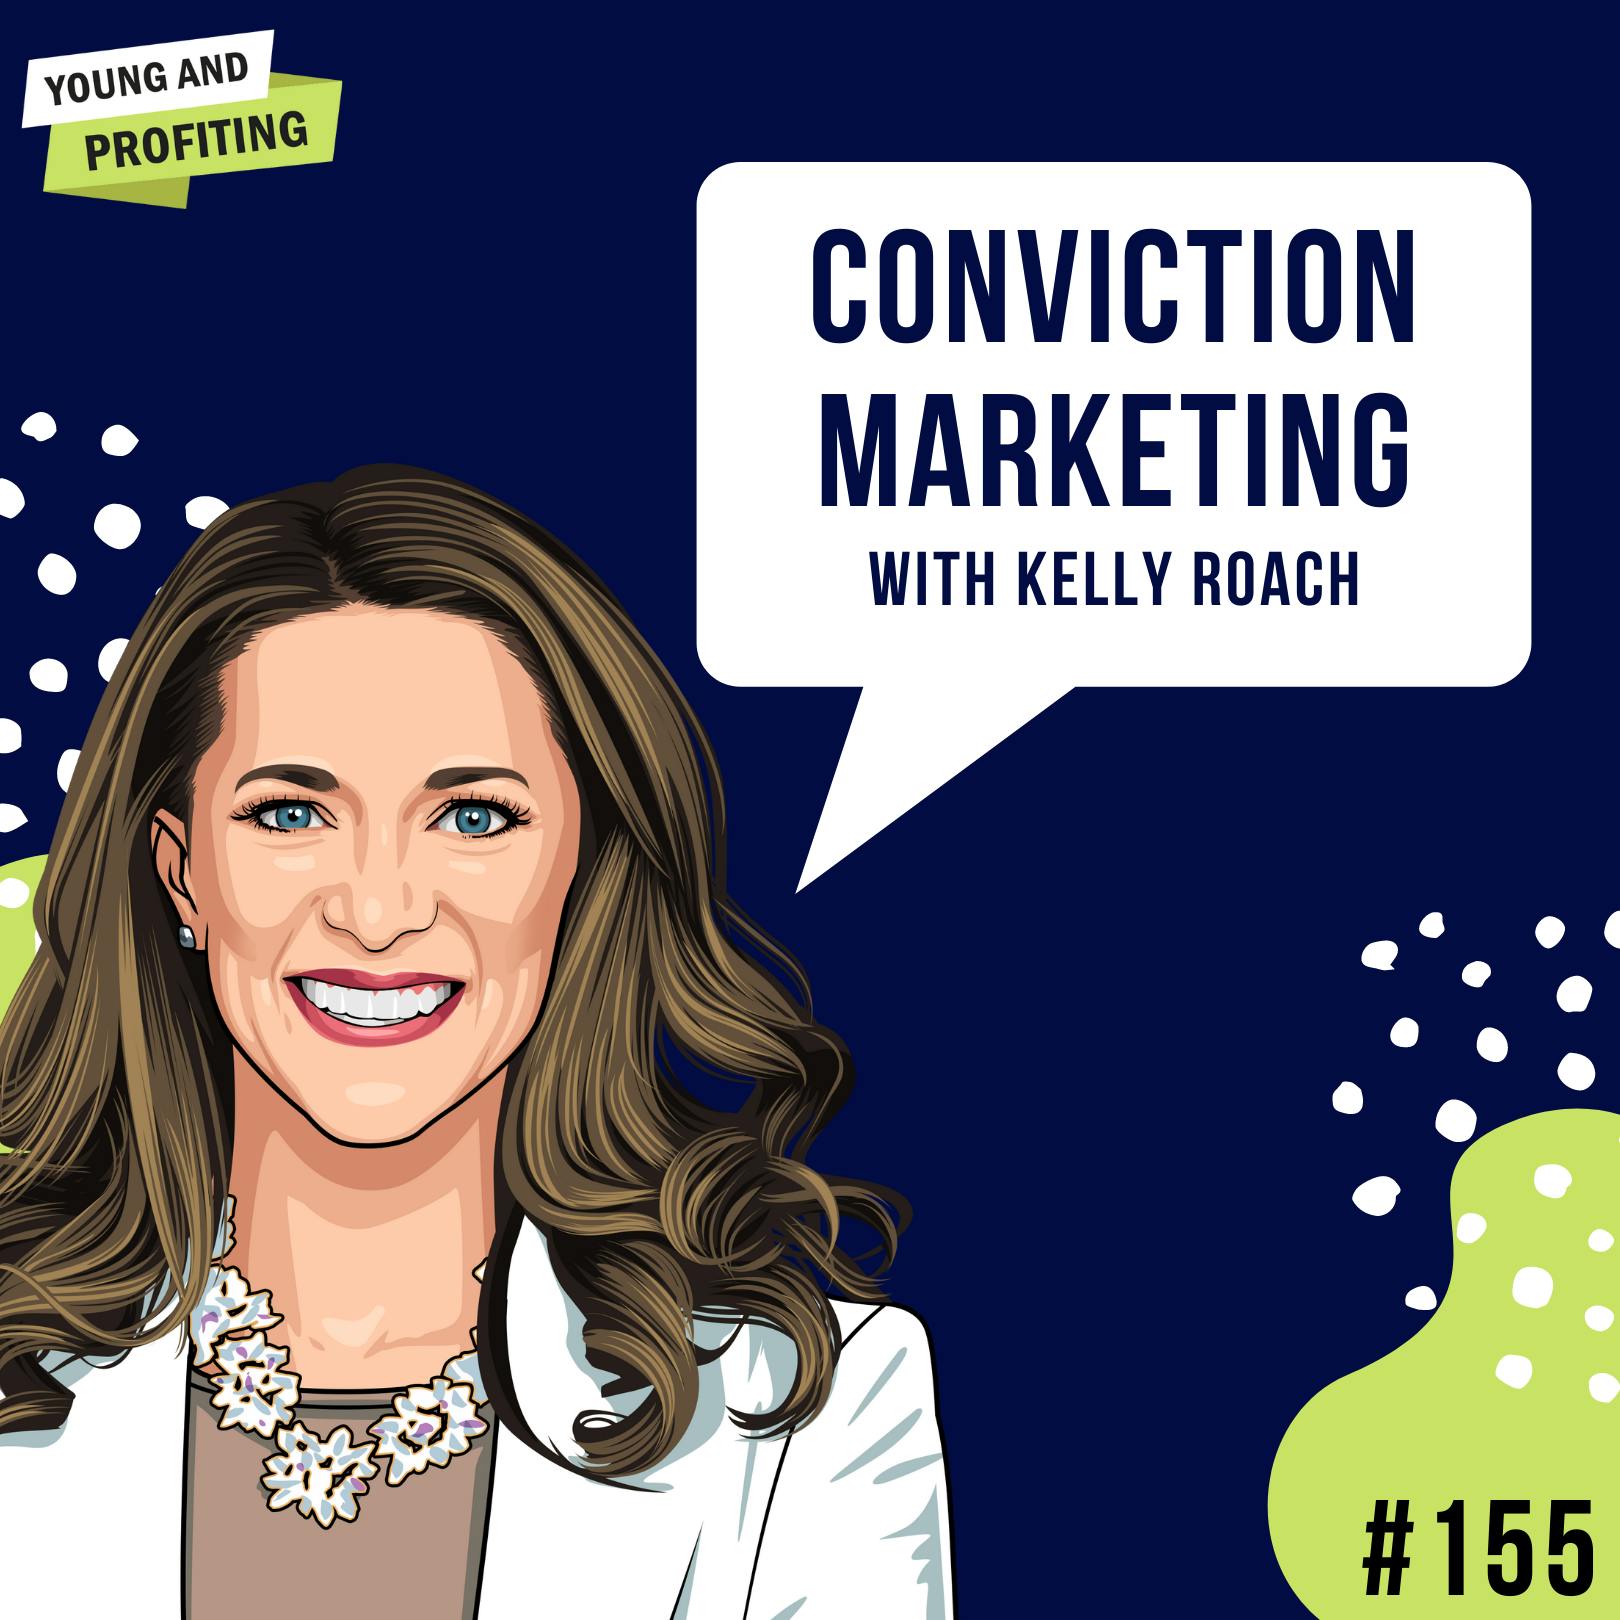 Kelly Roach: Conviction Marketing | E155 by Hala Taha | YAP Media Network